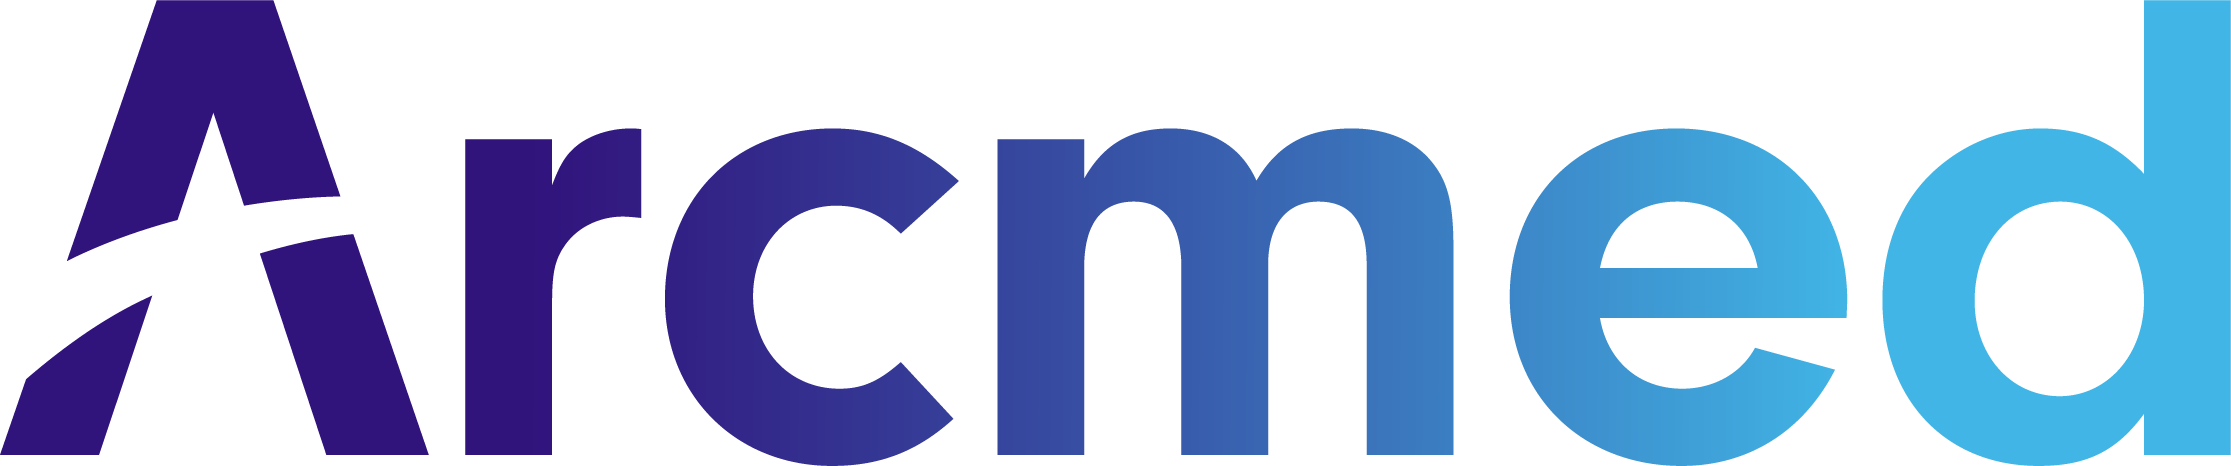 Arcmed logo